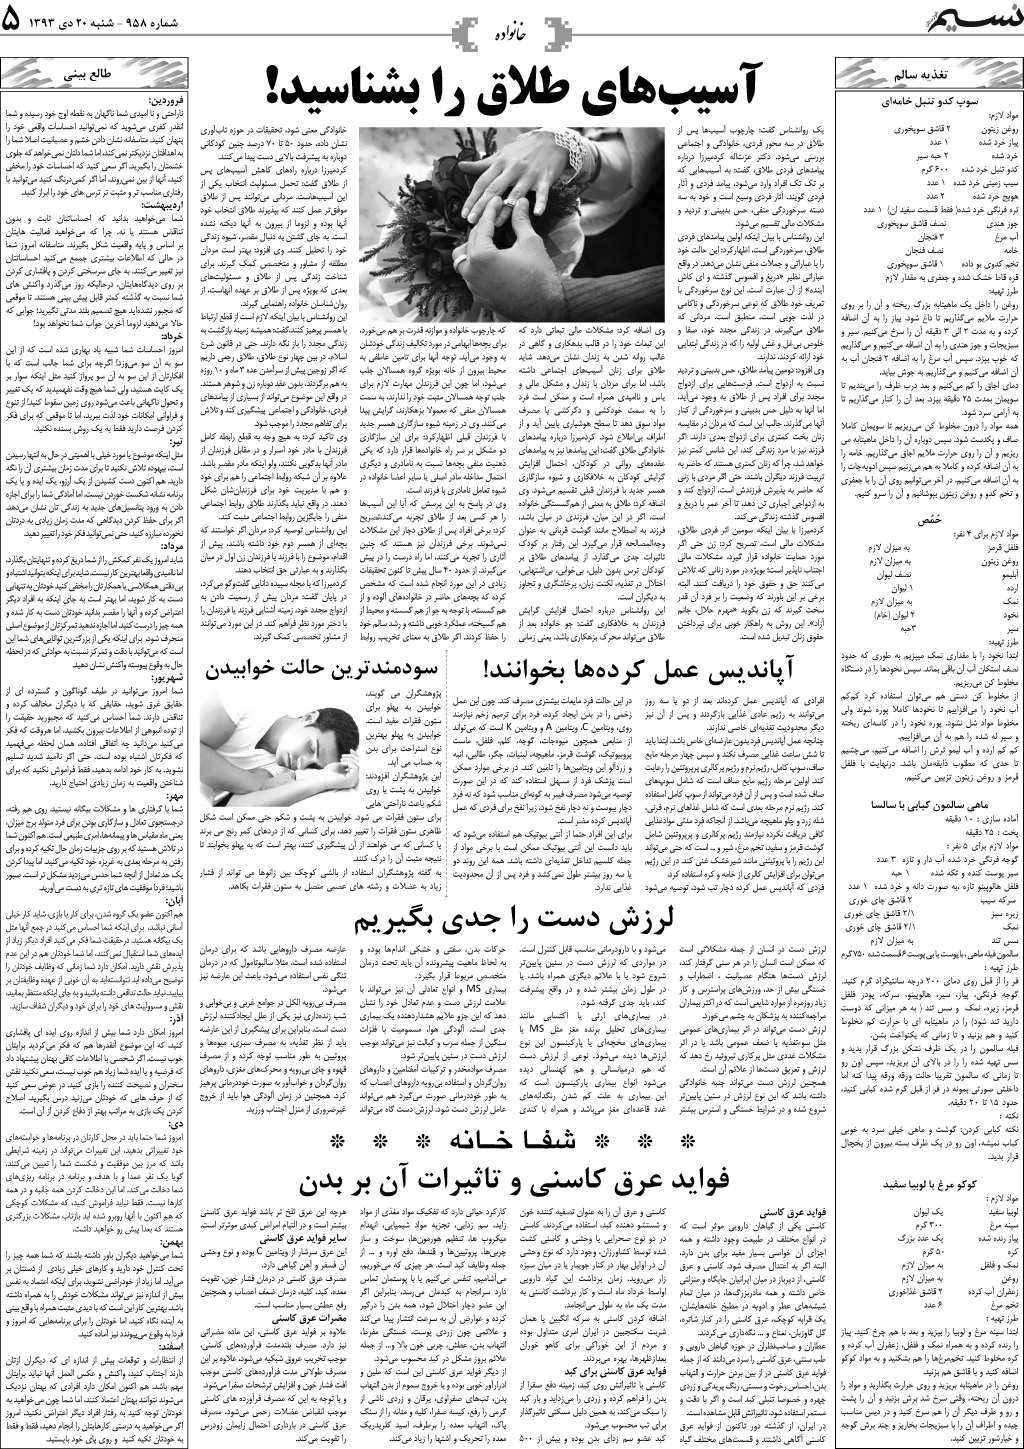 صفحه خانواده روزنامه نسیم شماره 958